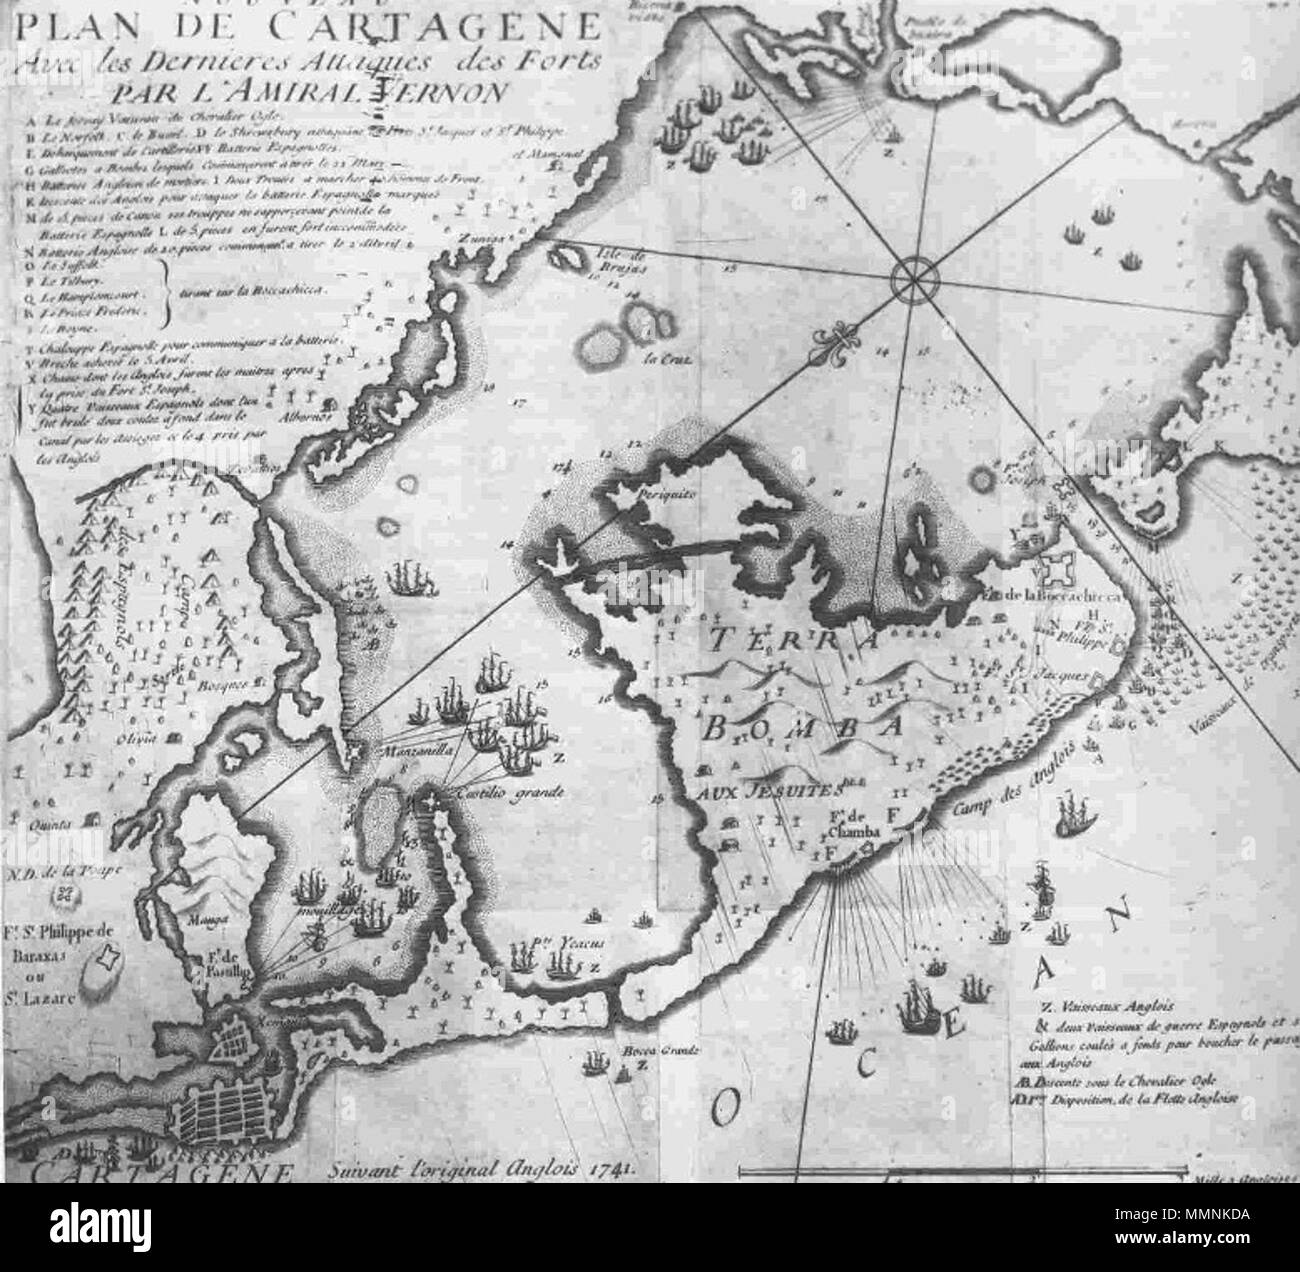 . Español: Mapa de los ataques de Vernon a Cartagena de Indias . 1741. Cartógrafos ingleses. Este es una copia por franceses 1741 ataque cartagena2 Foto Stock